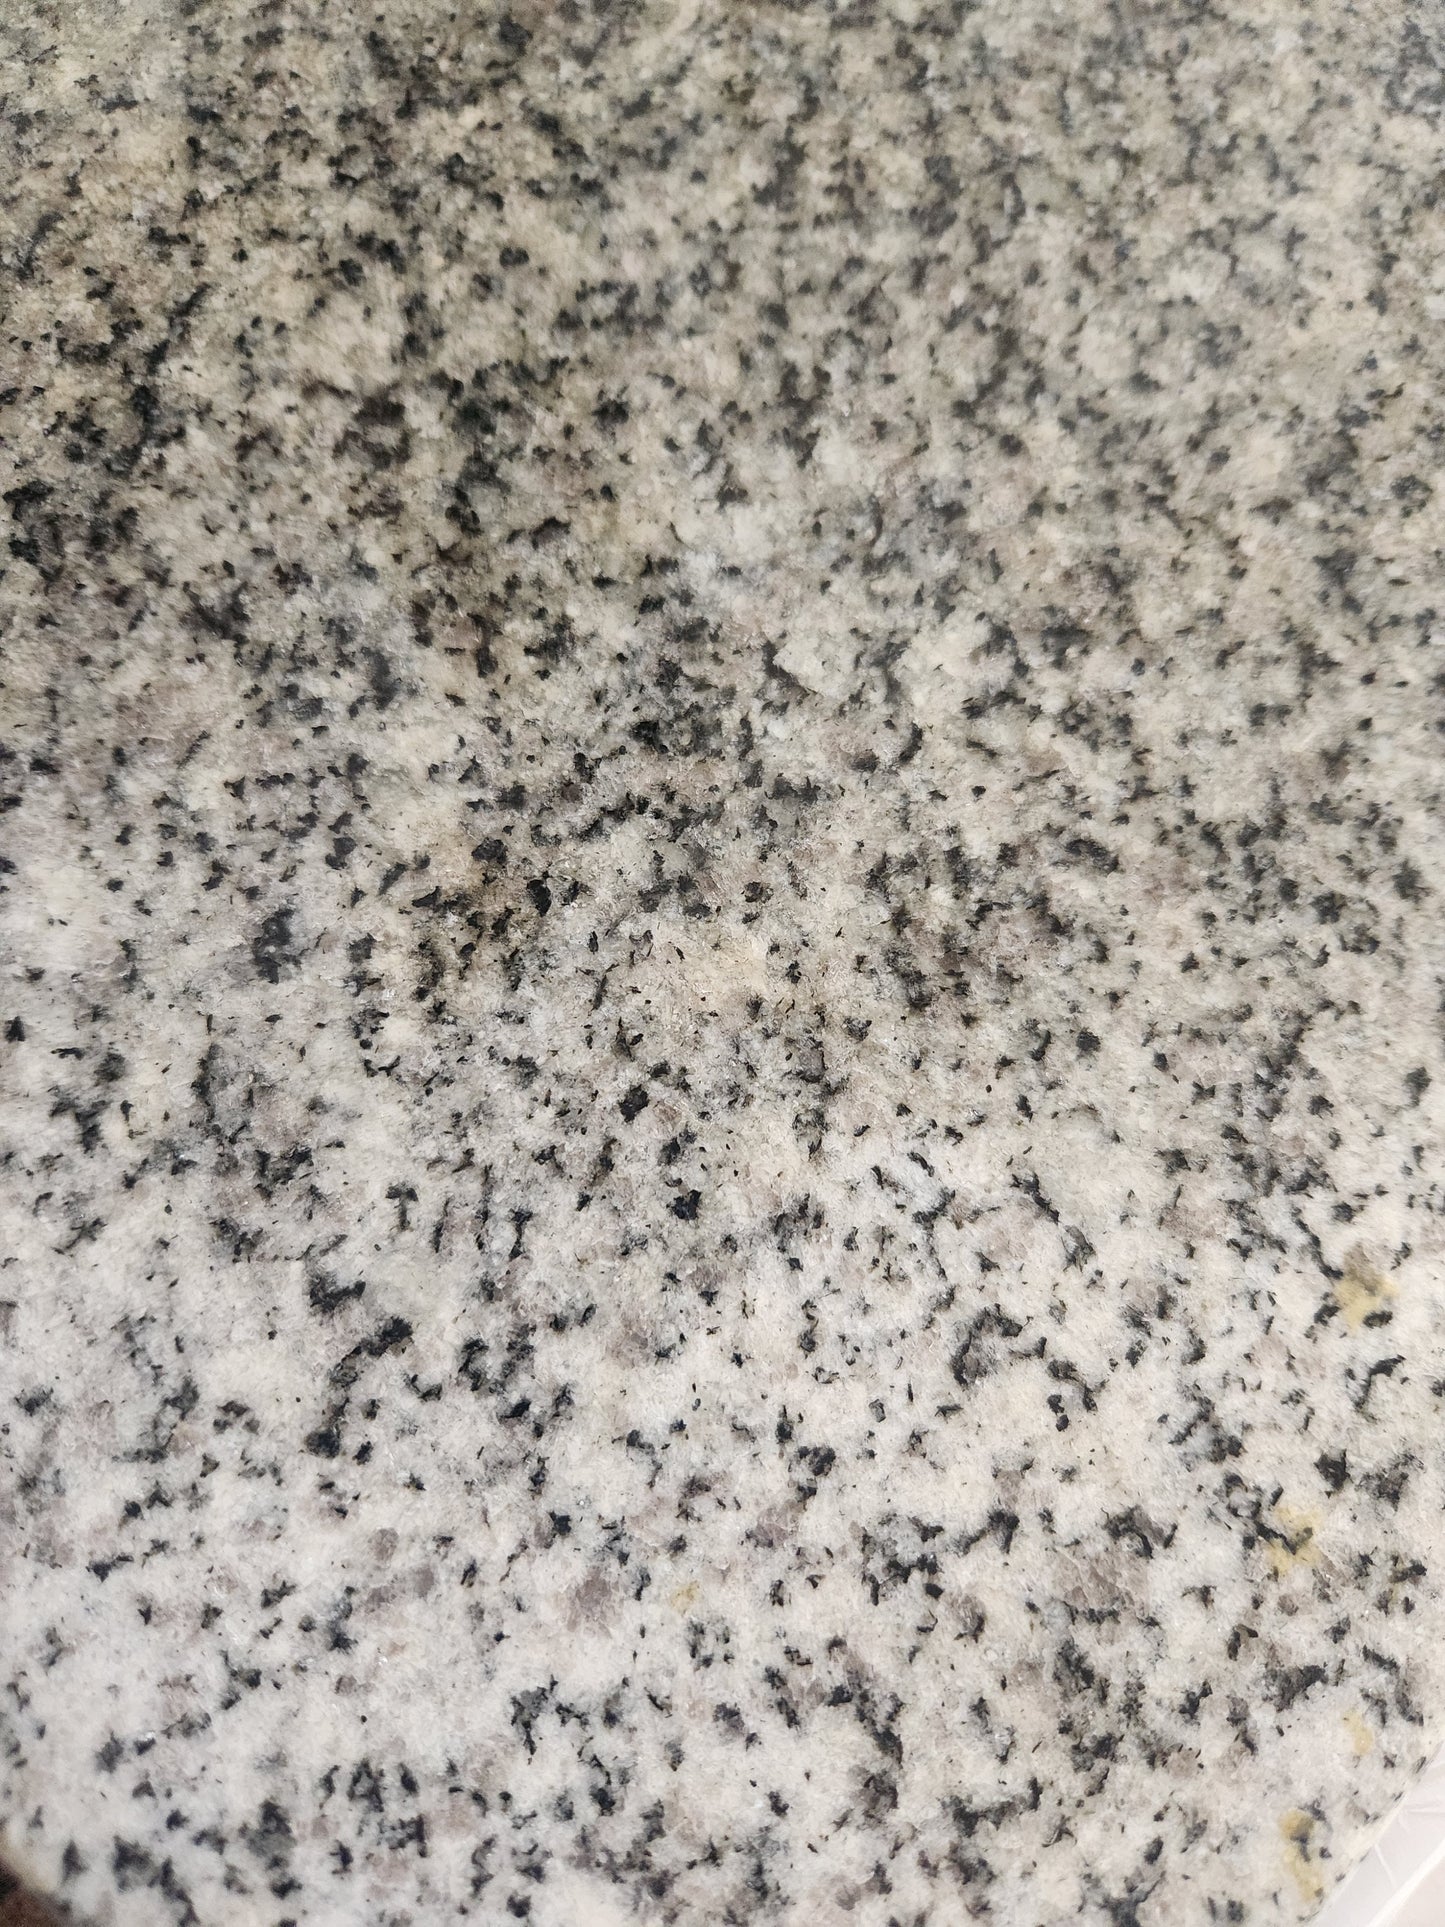 Granite/Stone Cutting Board